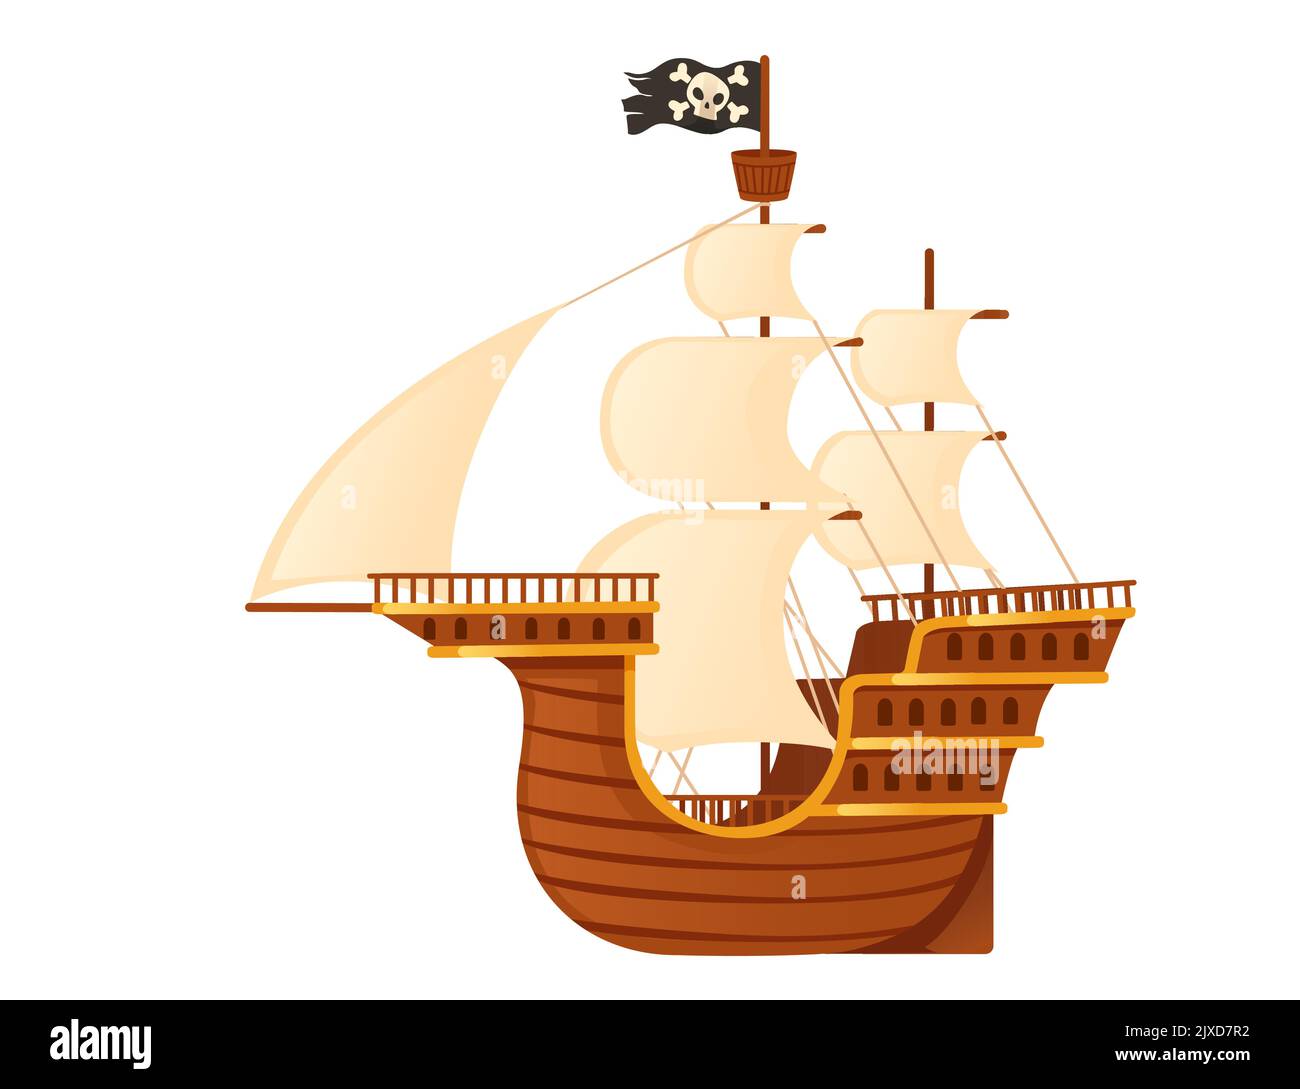 Bateau de pirate médiéval en bois avec voiles blanches et drapeau de pirate noir galiléon wessel illustration du vecteur isolée sur fond blanc Illustration de Vecteur